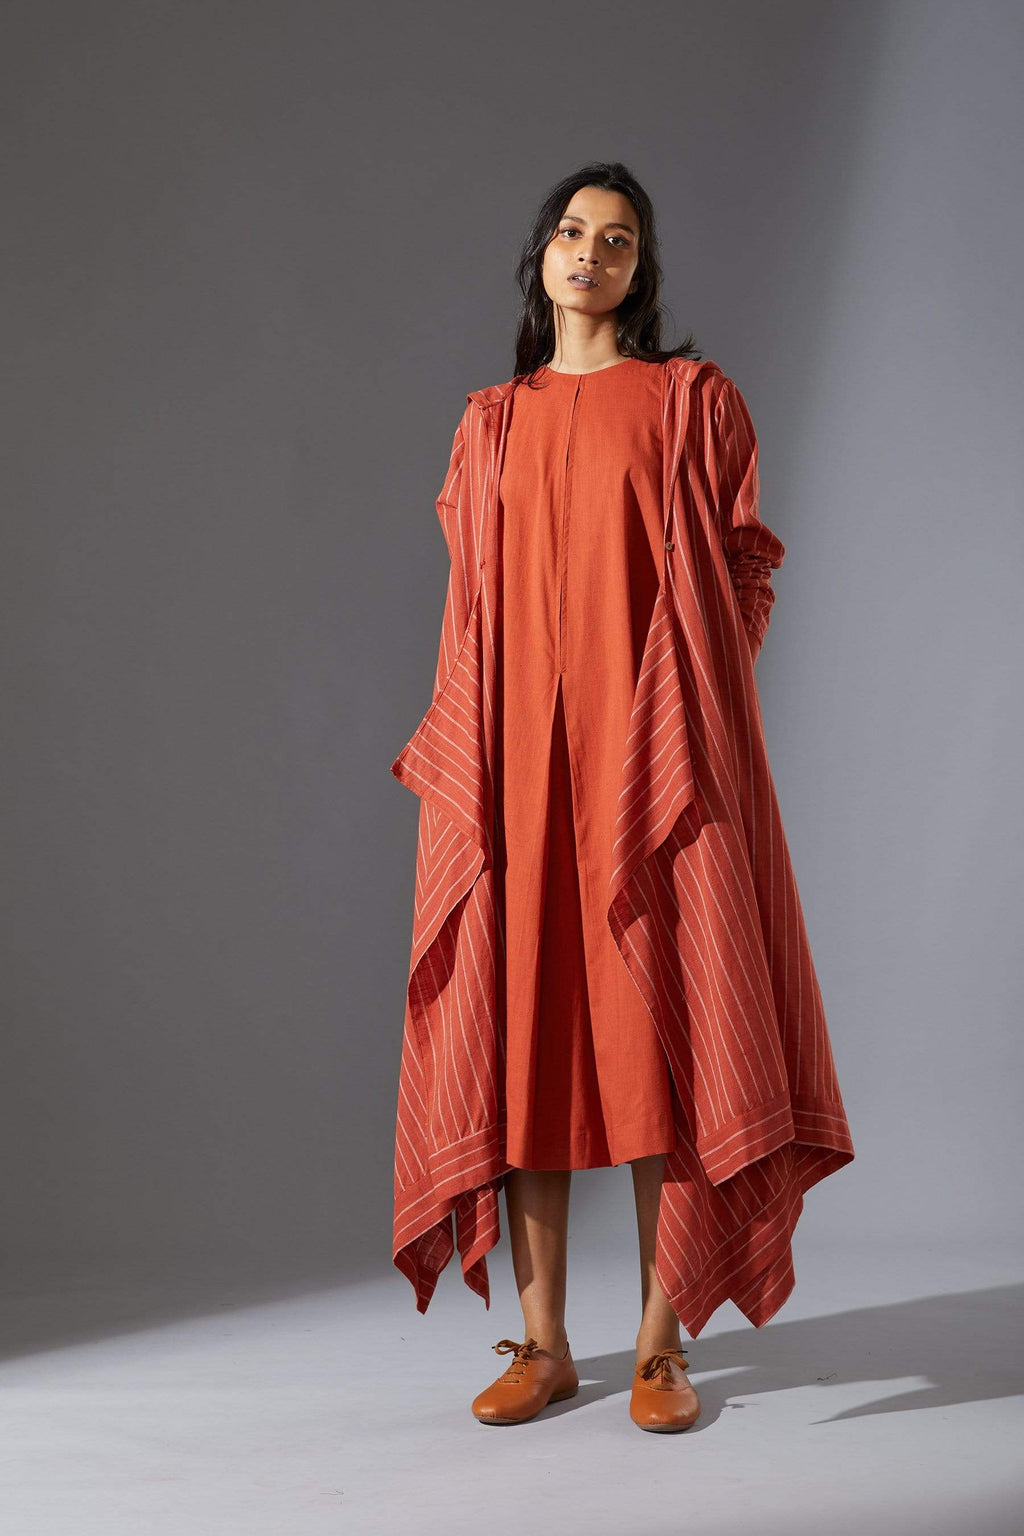 Mati Jackets Mati Hooded Koza Rust Dress and Overlay Set